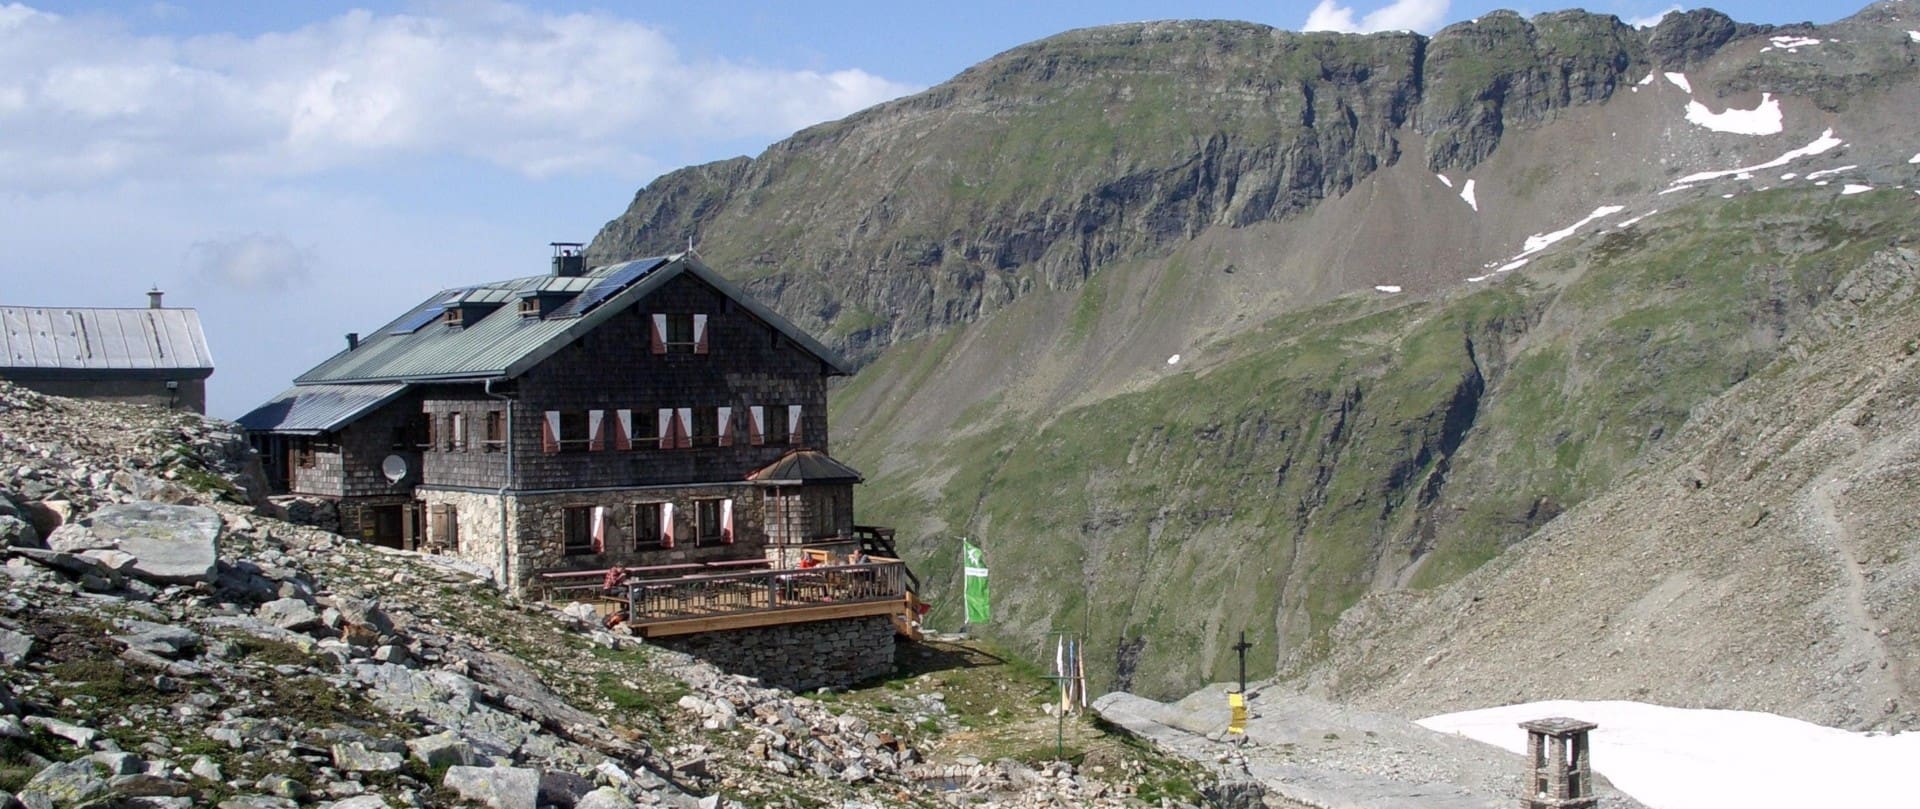 St. Pöltner Hütte mit den Felbertauern im Hintergrund